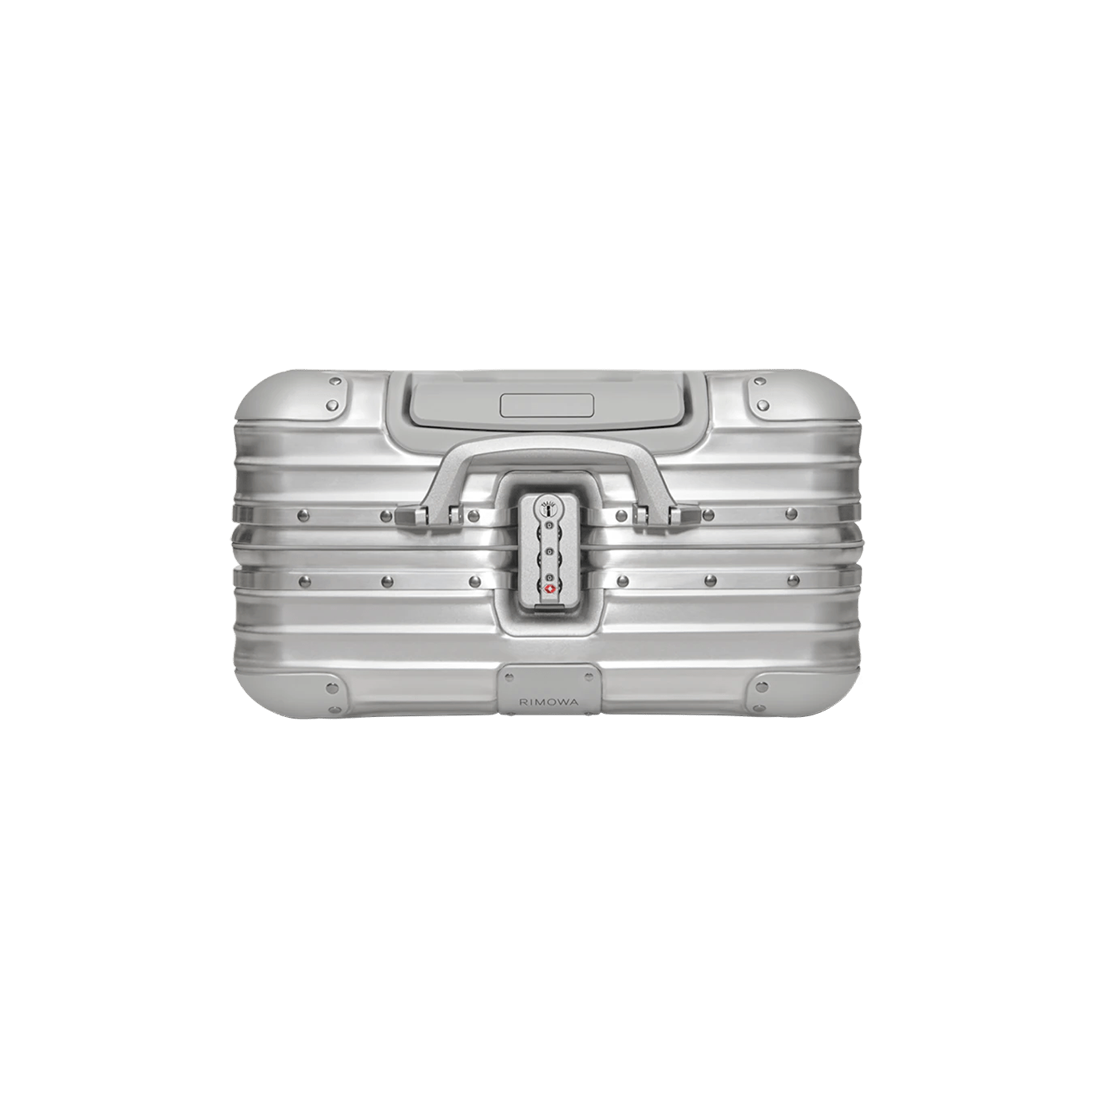 Rimowa Original Compact Travel Suitcase